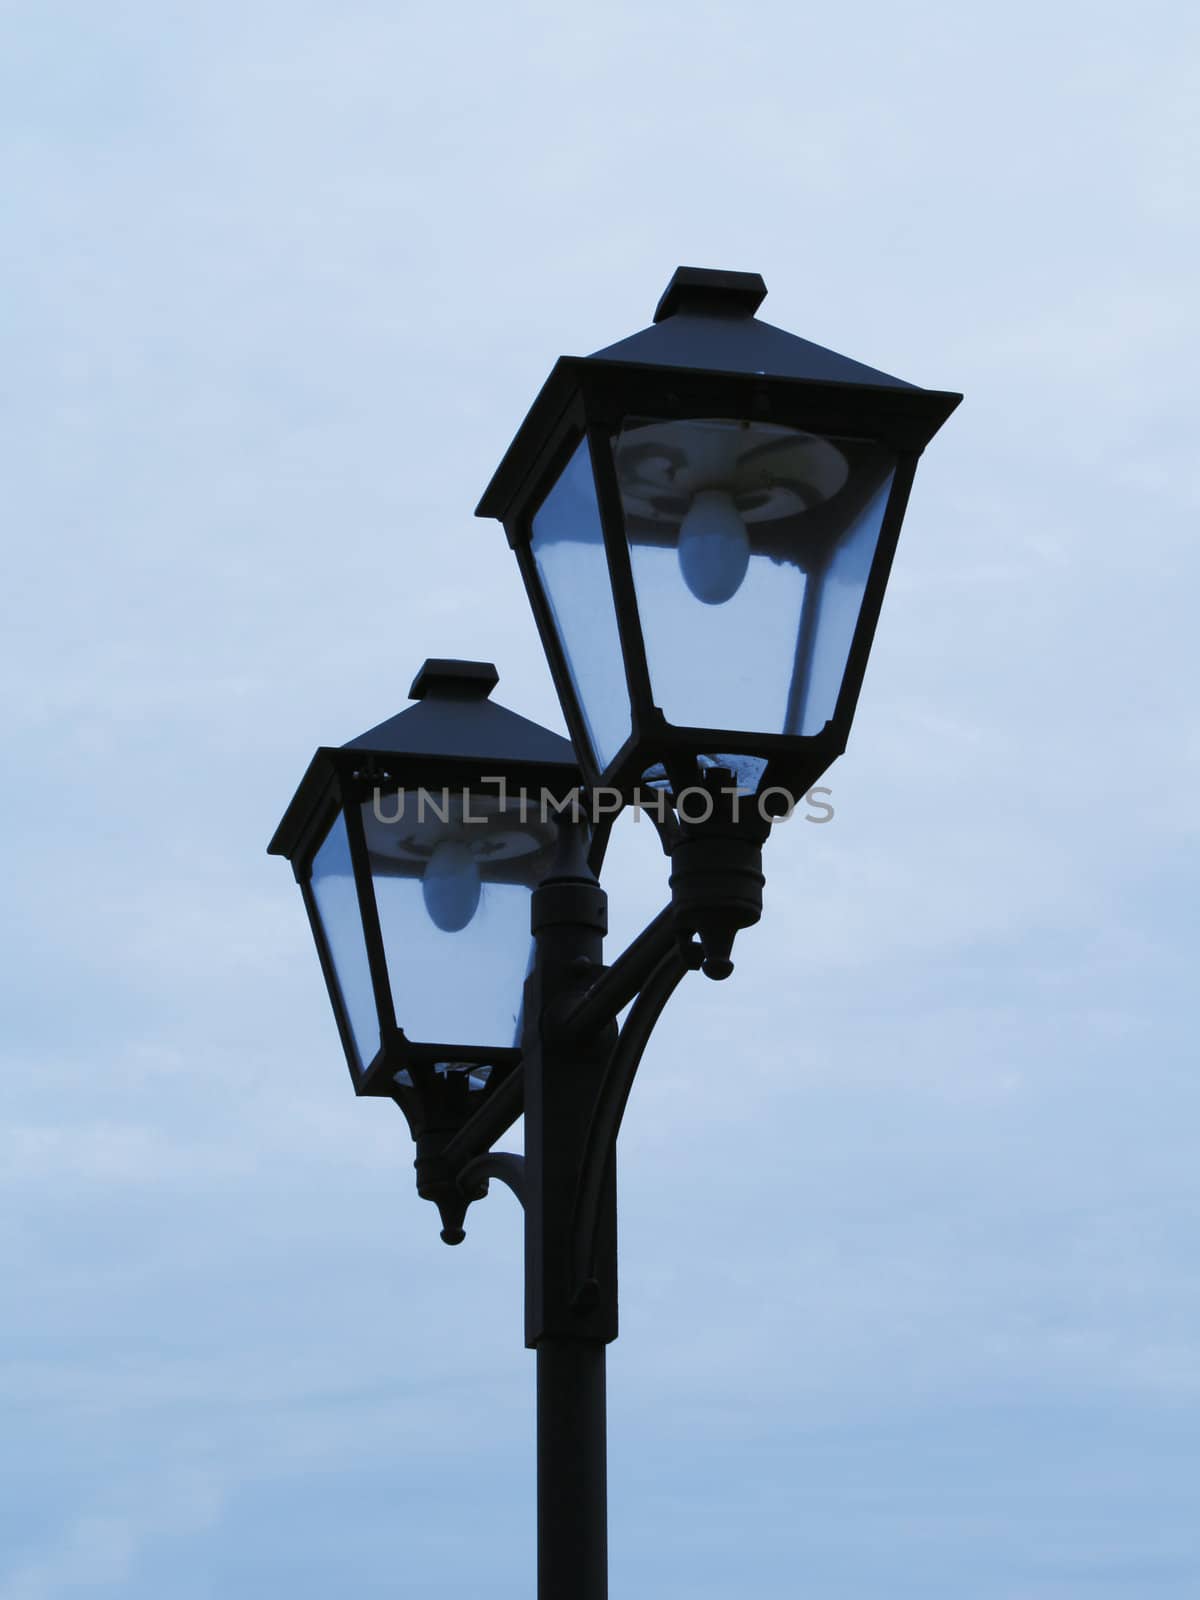 Street lamps by Dan70